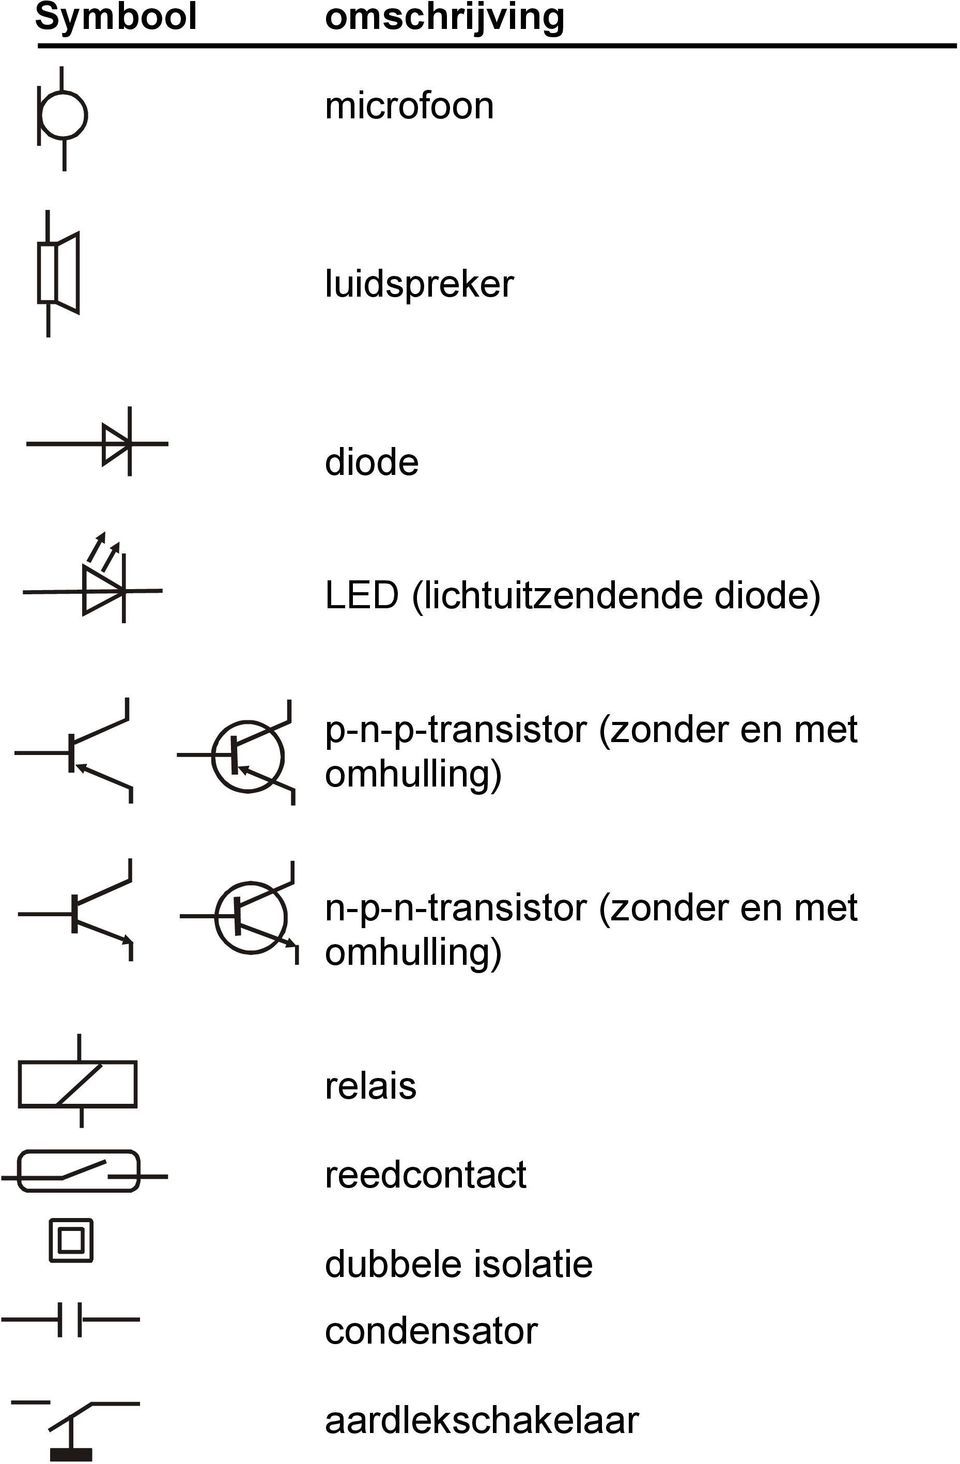 omhulling) n-p-n-transistor (zonder en met omhulling)